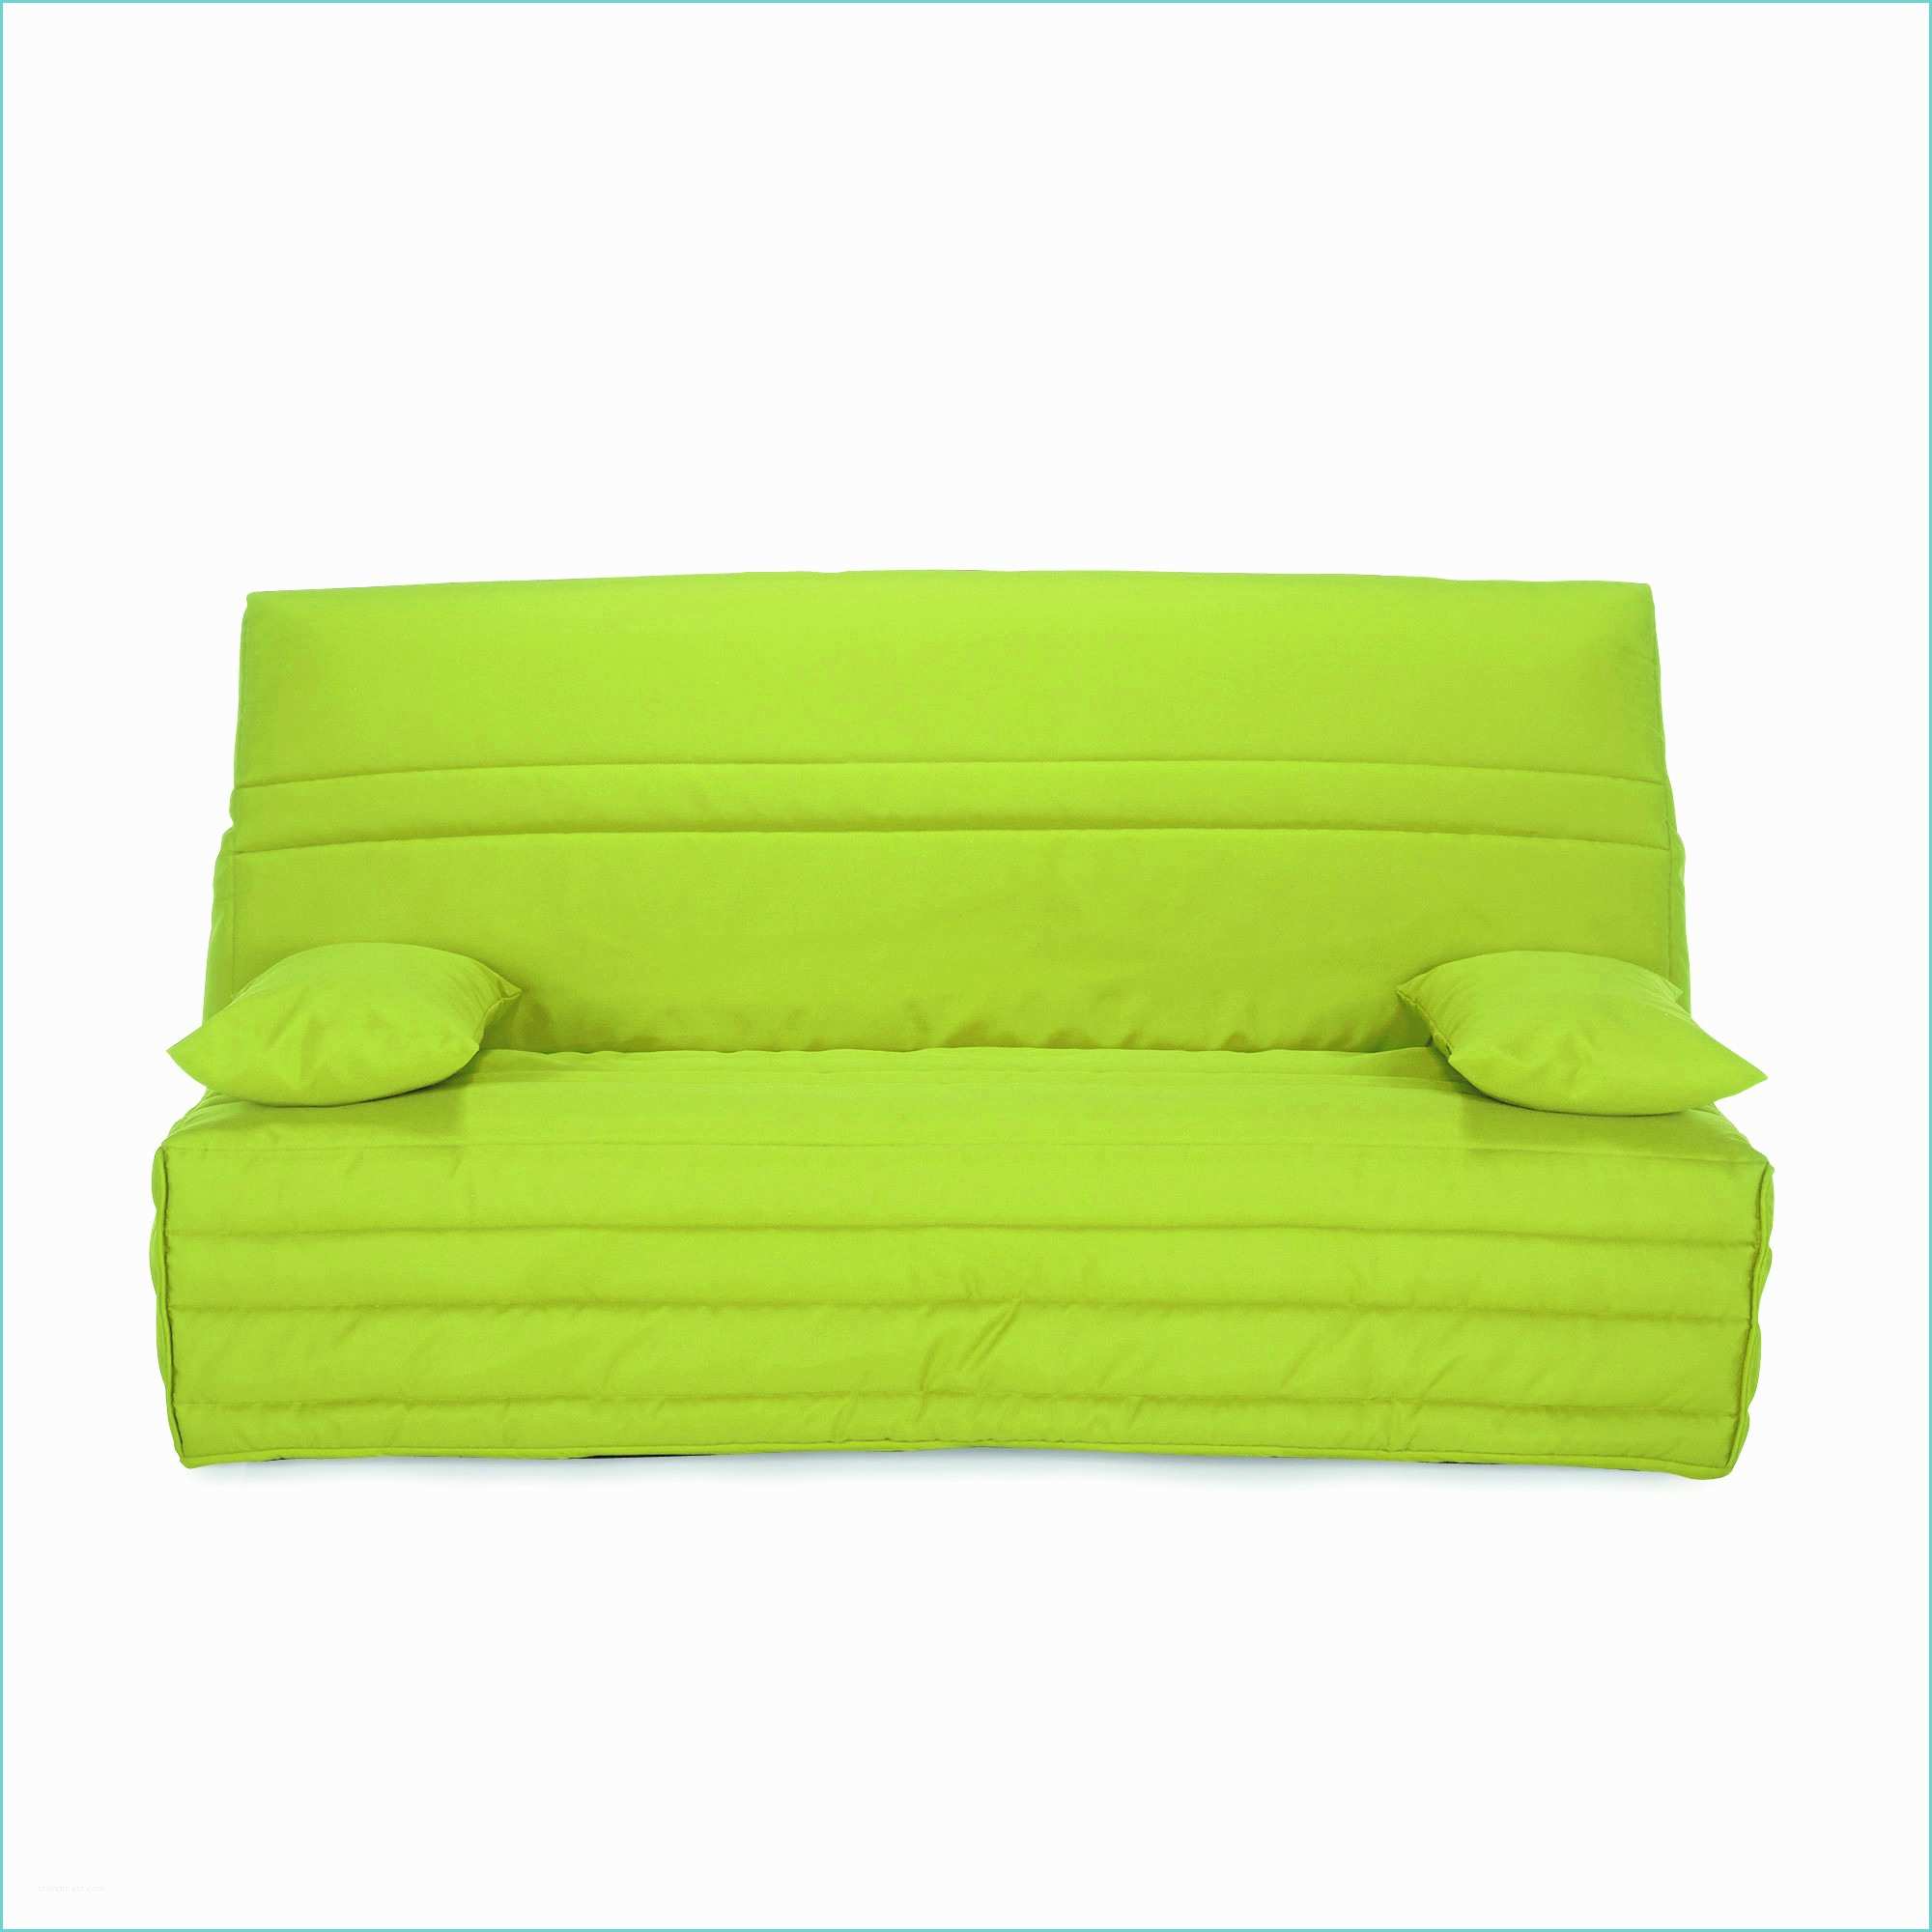 Clic Clac Pour Dormir Quotidien Bz Confortable Affordable Canape with Bz Confortable